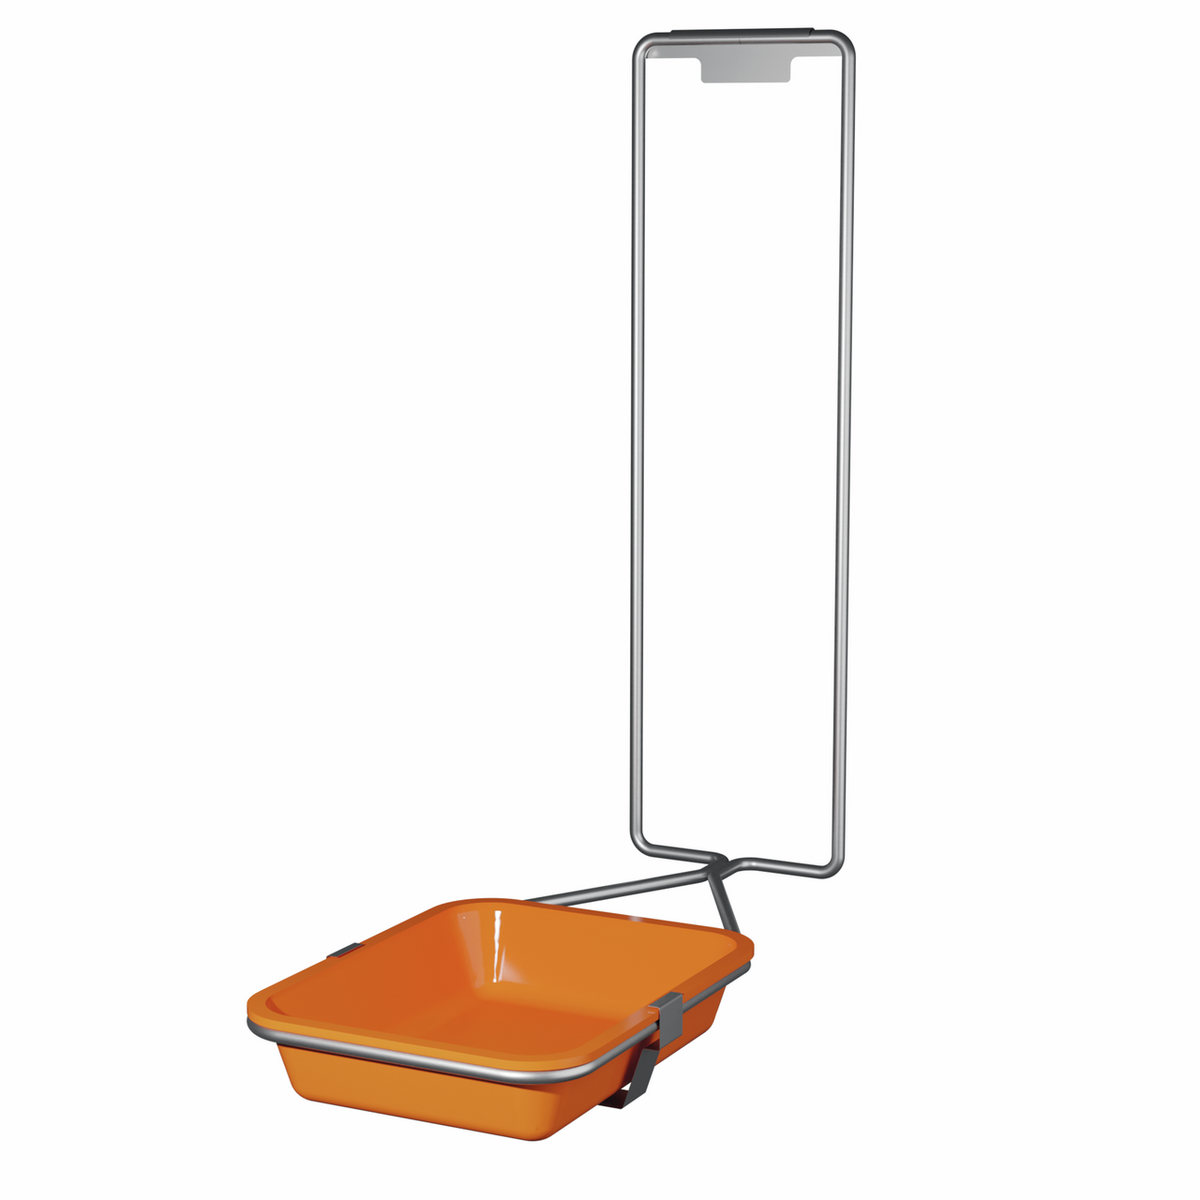 SH 4 hi-vis orange drip tray